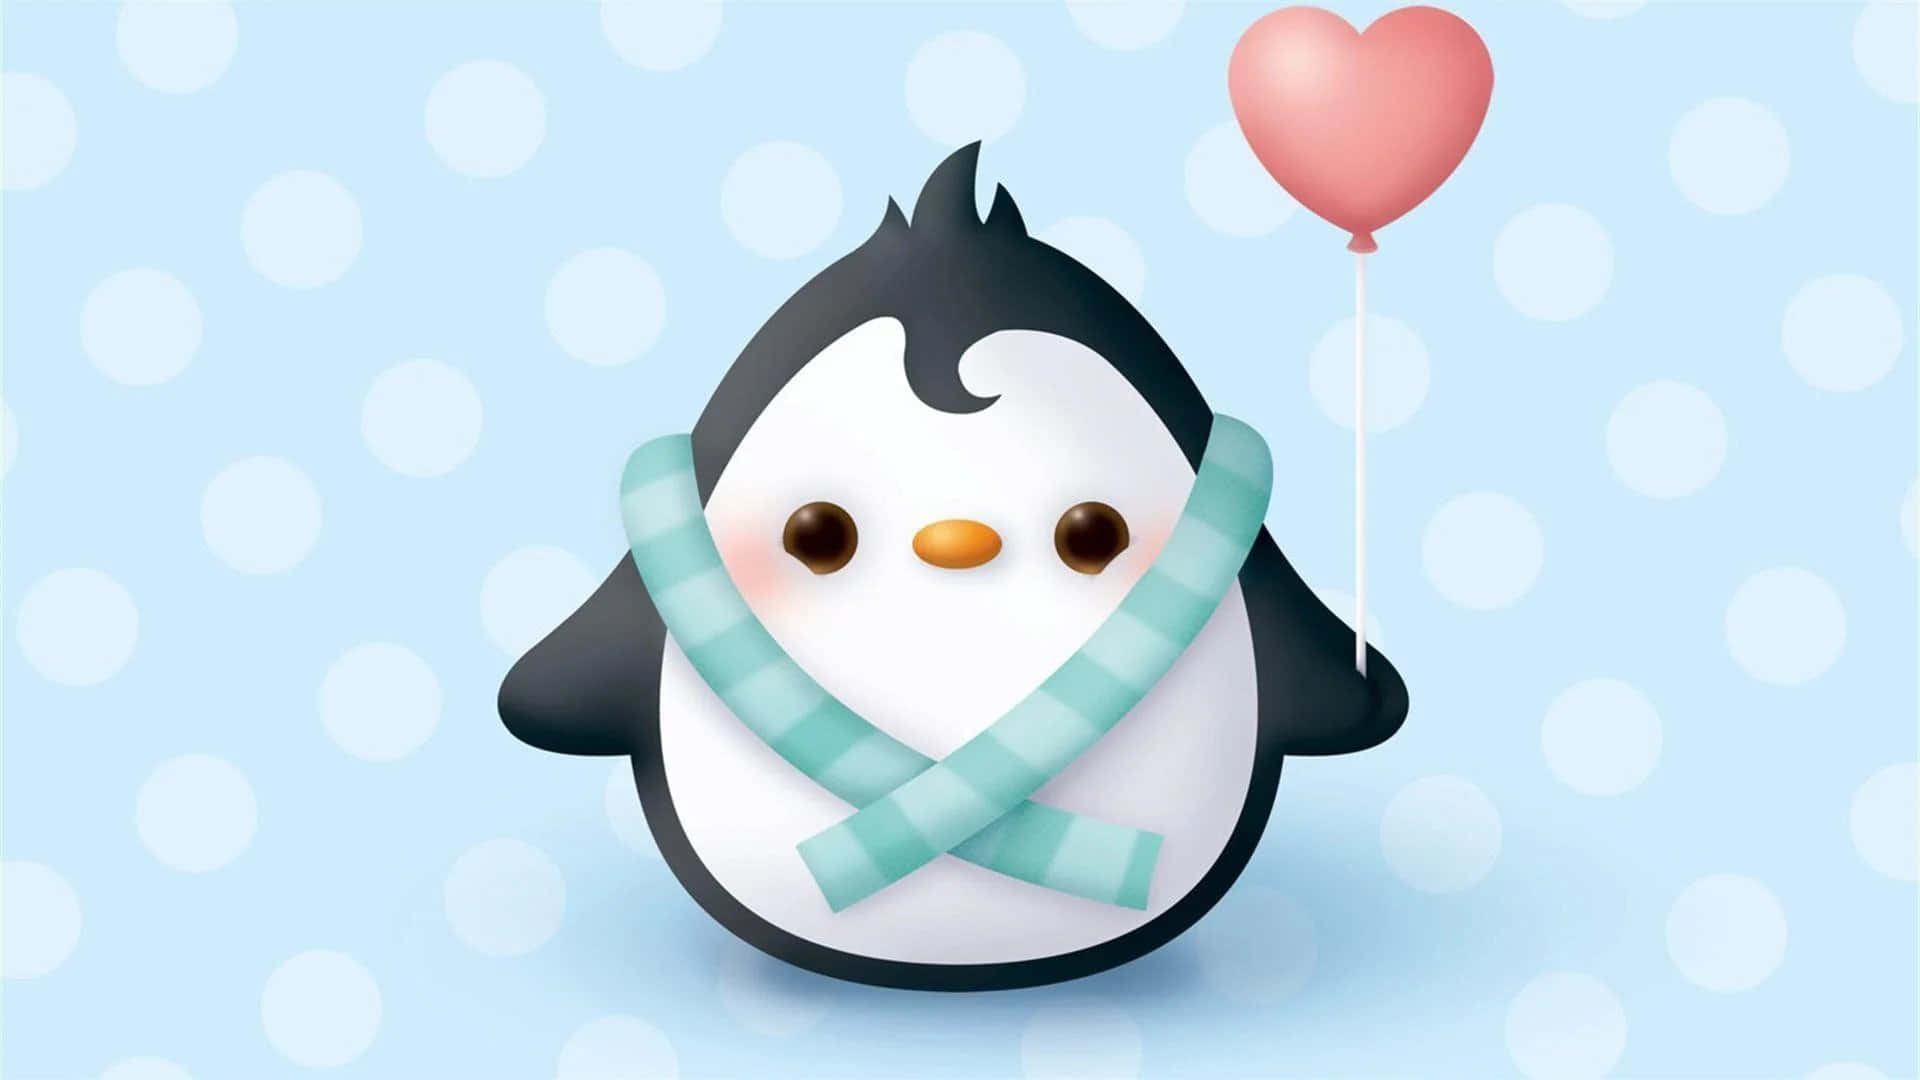 “An Adorable Baby Penguin”